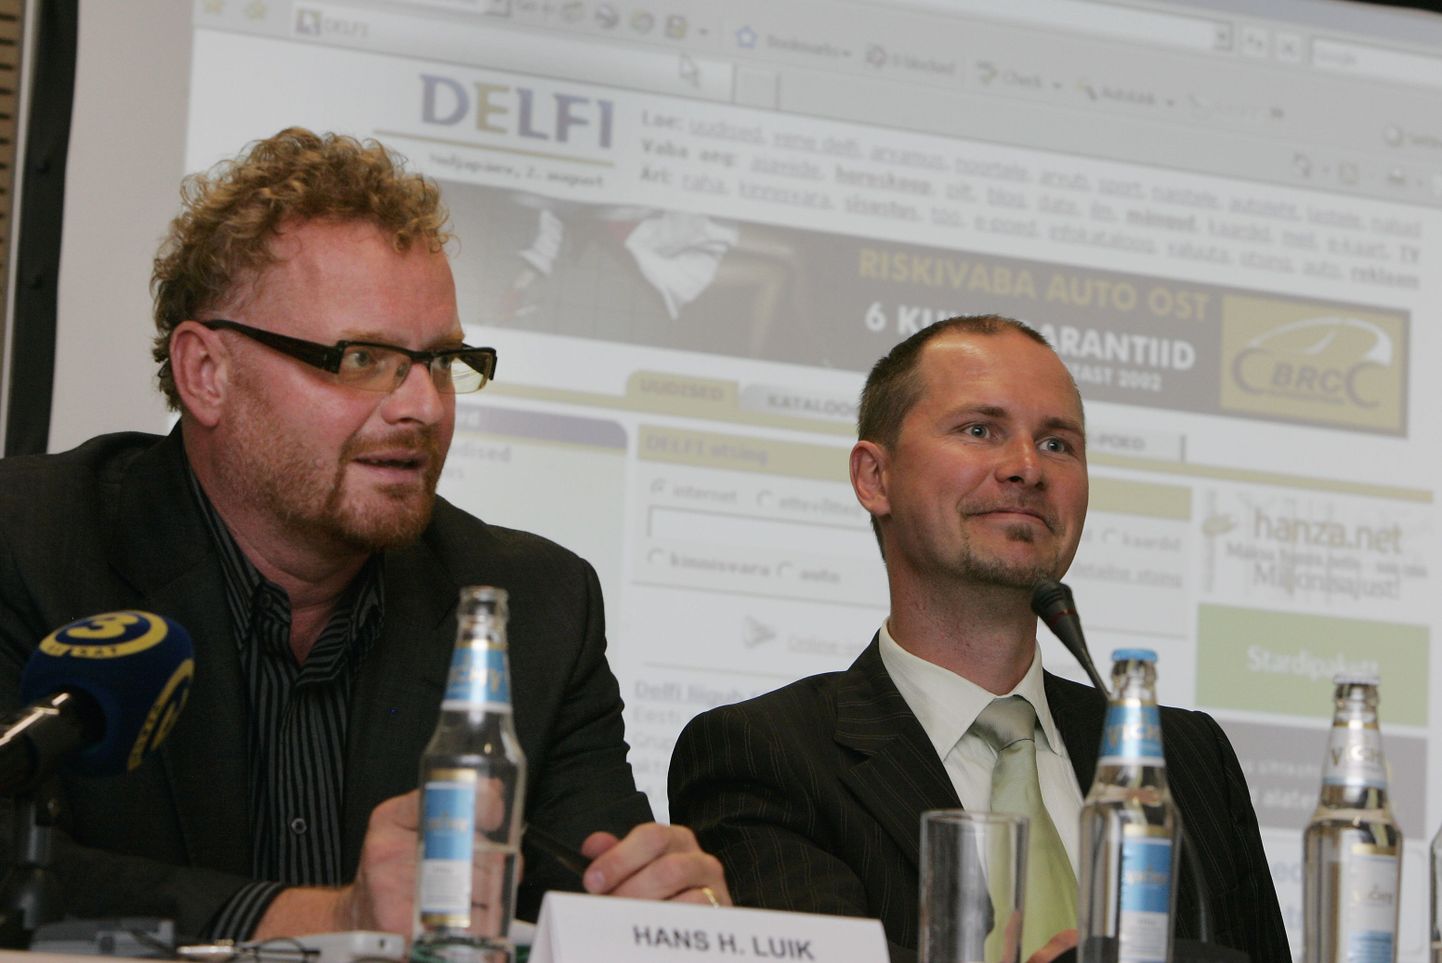 Ekspress Grupi suuromanik 
Hans H. Luik ja Ville Jehe pressikonverentsil, 2007. aasta suvel. Ekspress Grupp ostab 54,05 miljoni euro ehk ligikaudu 846 krooni eest internetiportaali Delfi.